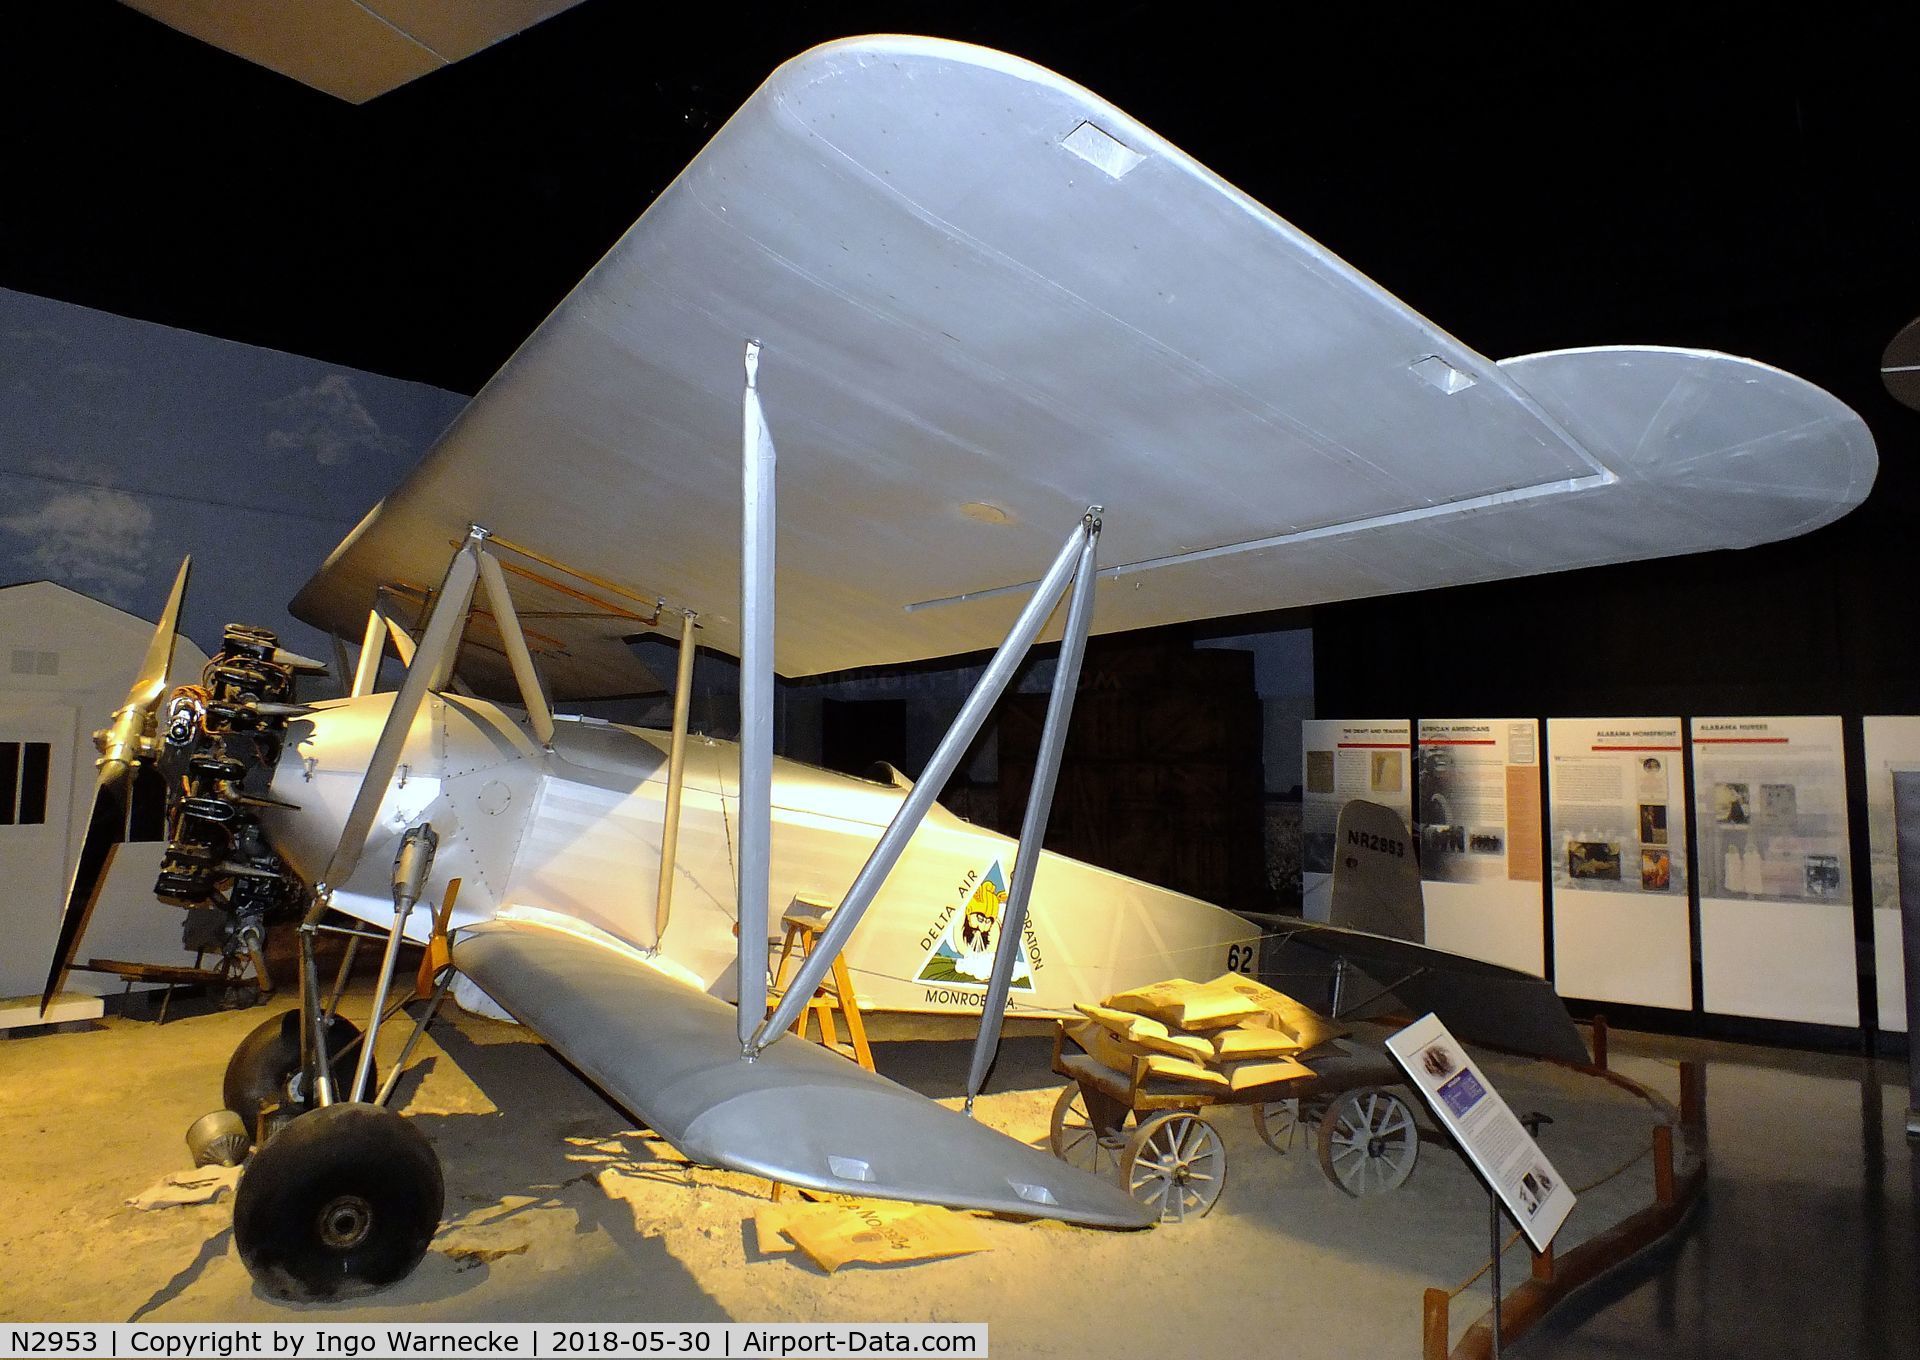 N2953, 1925 Huff PETREL C/N 62, Huff-Daland Duster Petrel at the Southern Museum of Flight, Birmingham AL